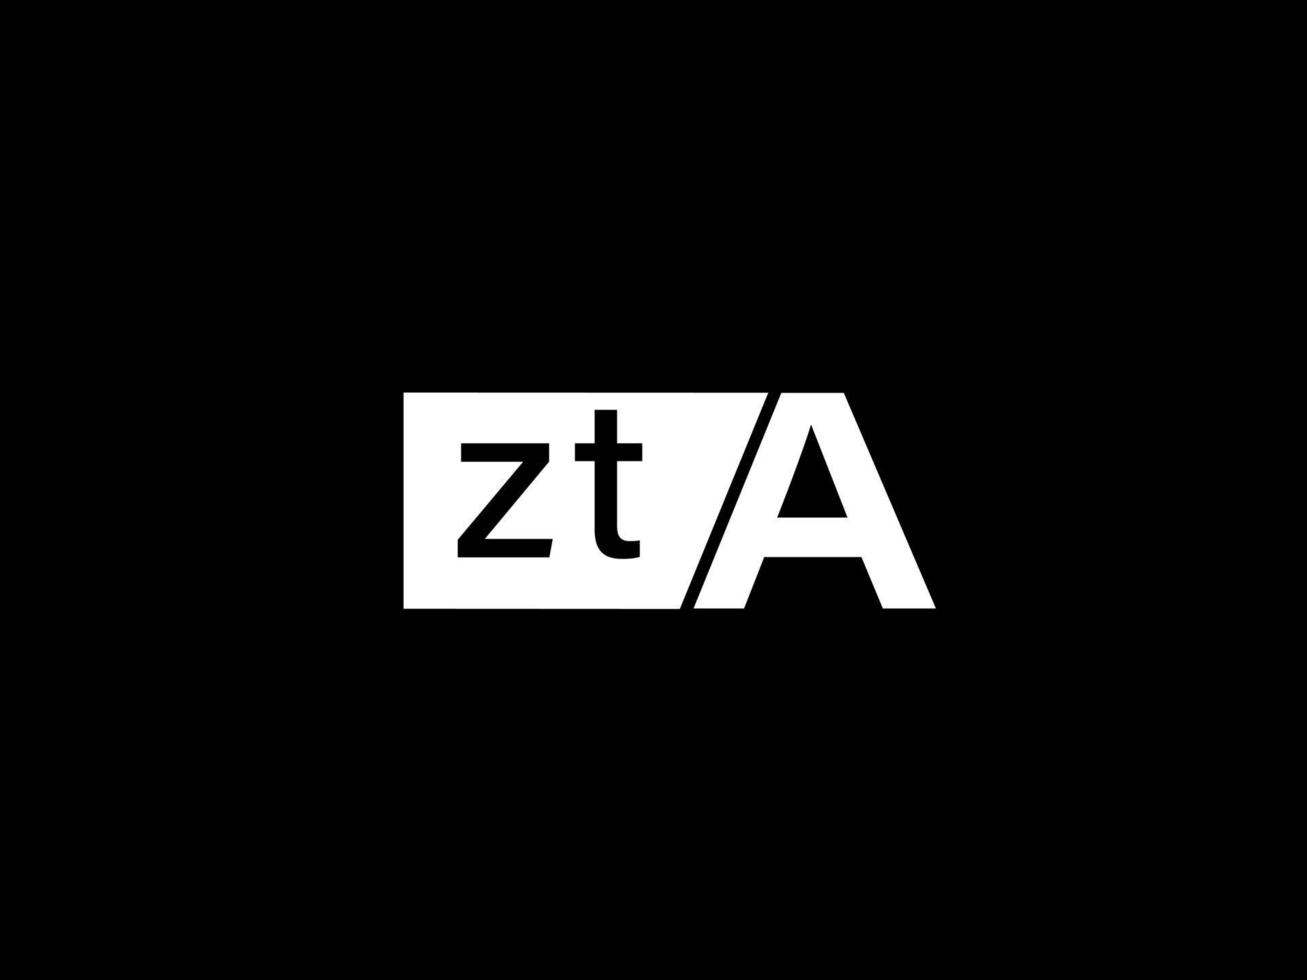 zta-Logo und Grafikdesign Vektorgrafiken, Symbole isoliert auf schwarzem Hintergrund vektor